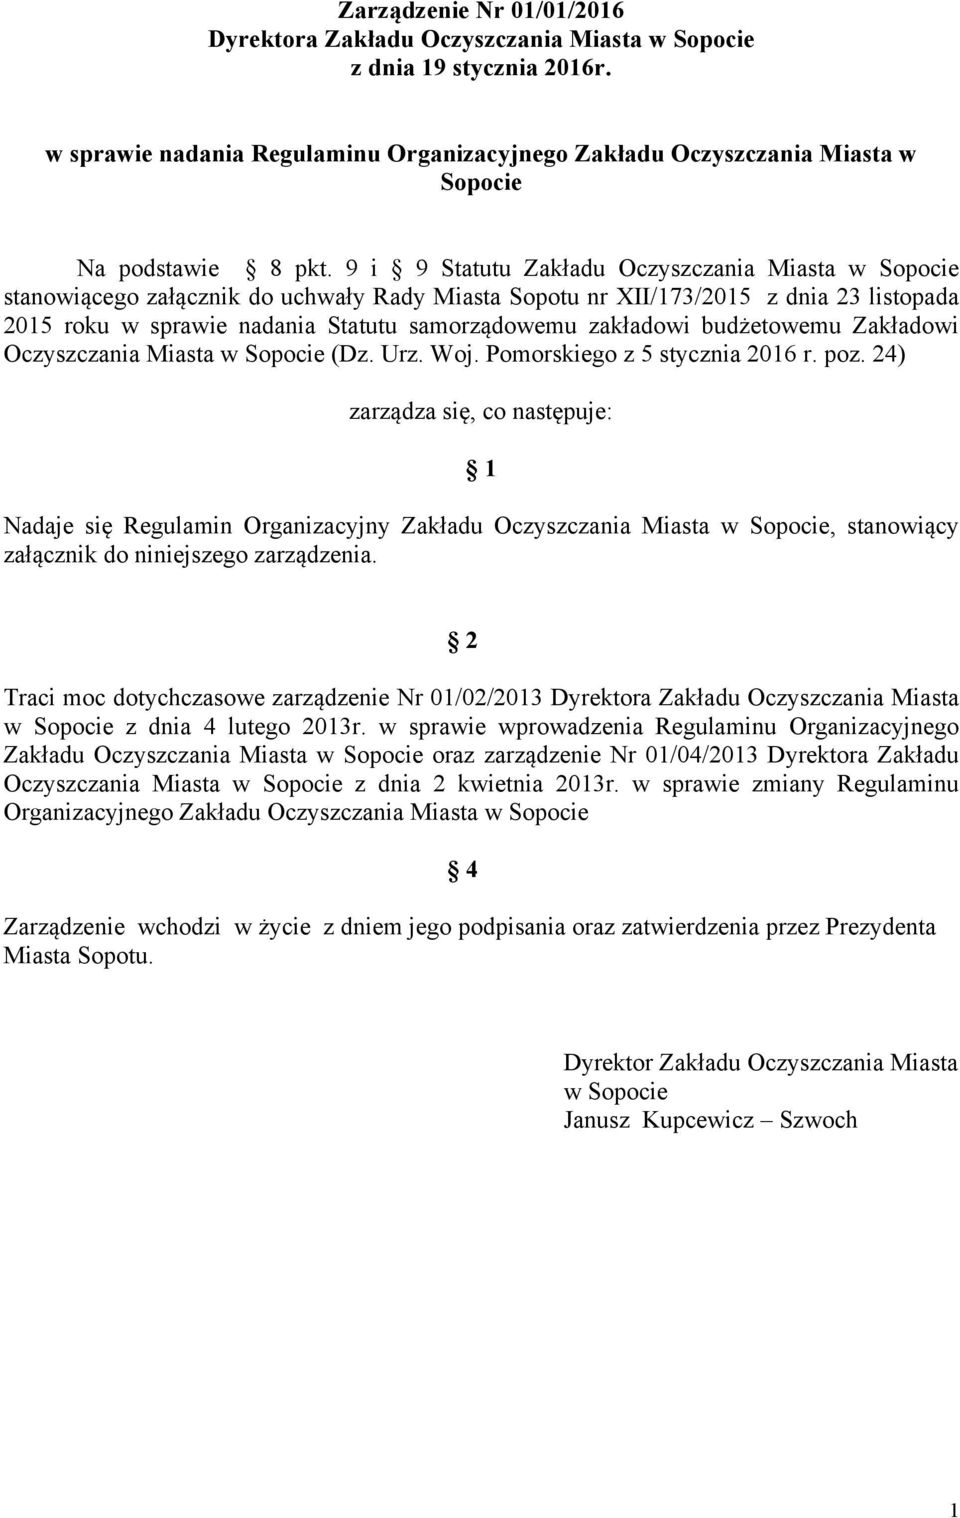 9 i 9 Statutu Zakładu Oczyszczania Miasta w Sopocie stanowiącego załącznik do uchwały Rady Miasta Sopotu nr XII/173/2015 z dnia 23 listopada 2015 roku w sprawie nadania Statutu samorządowemu